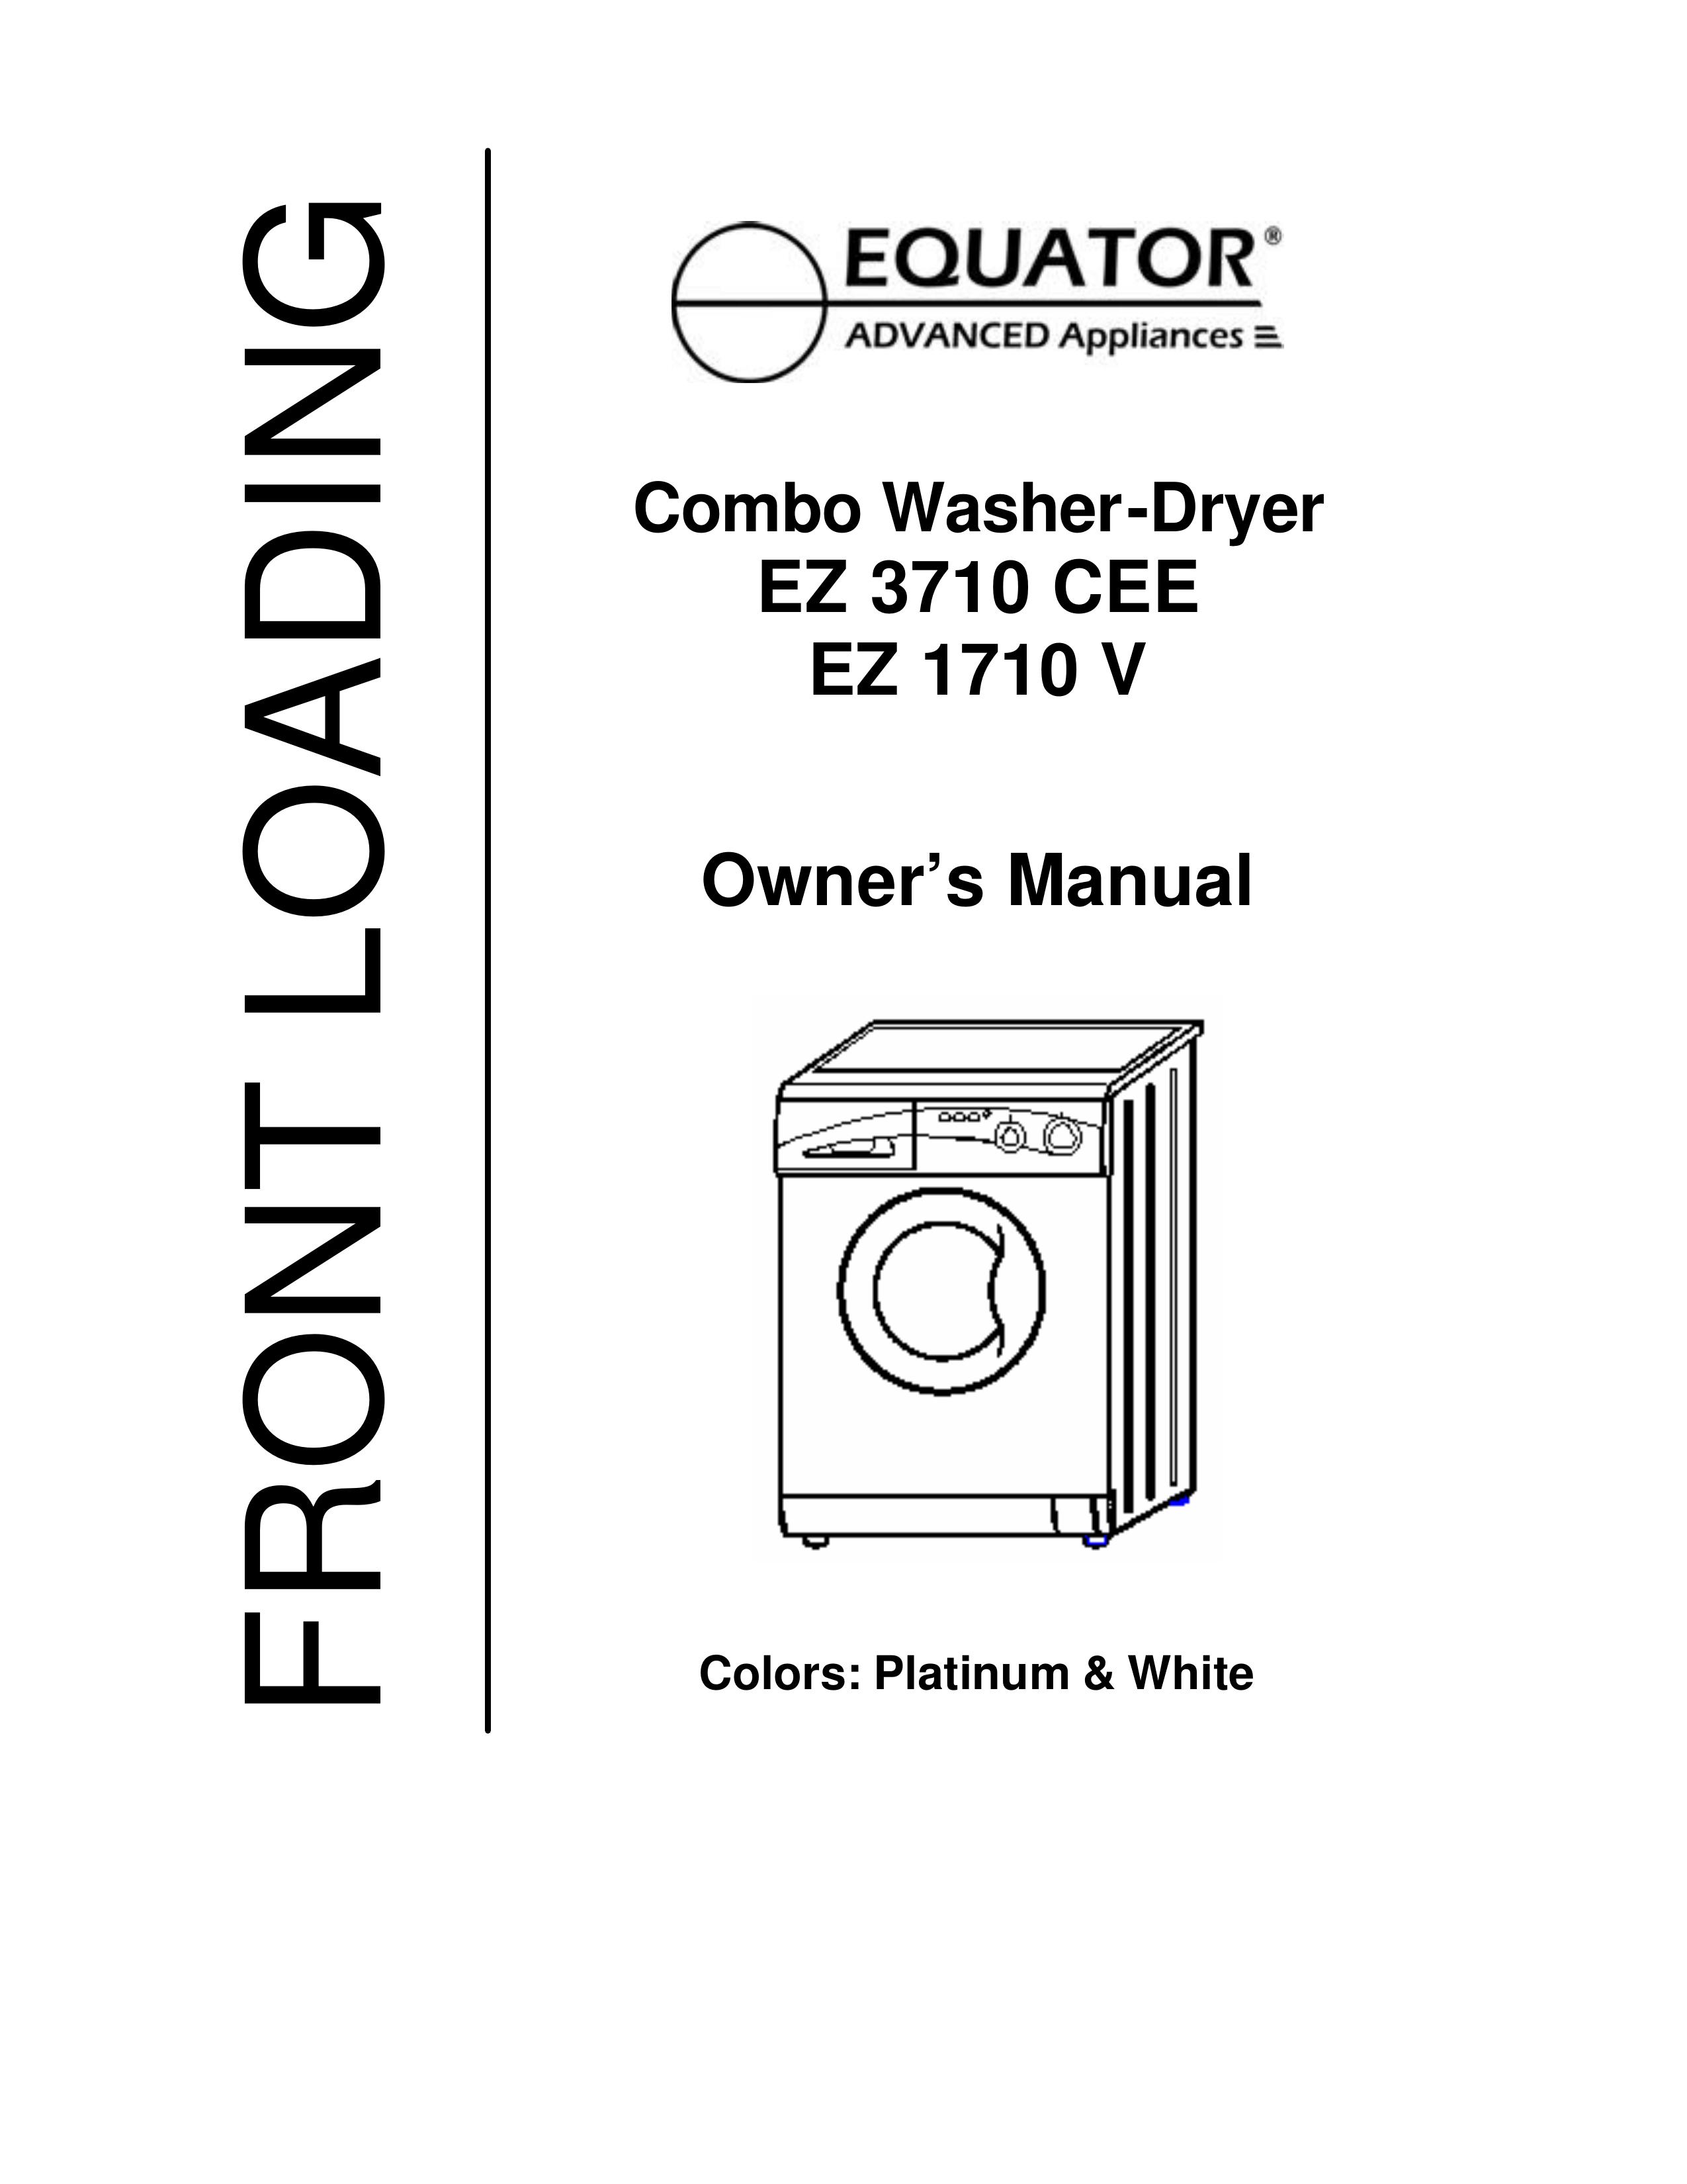 Equator EZ 1710 V Washer/Dryer User Manual